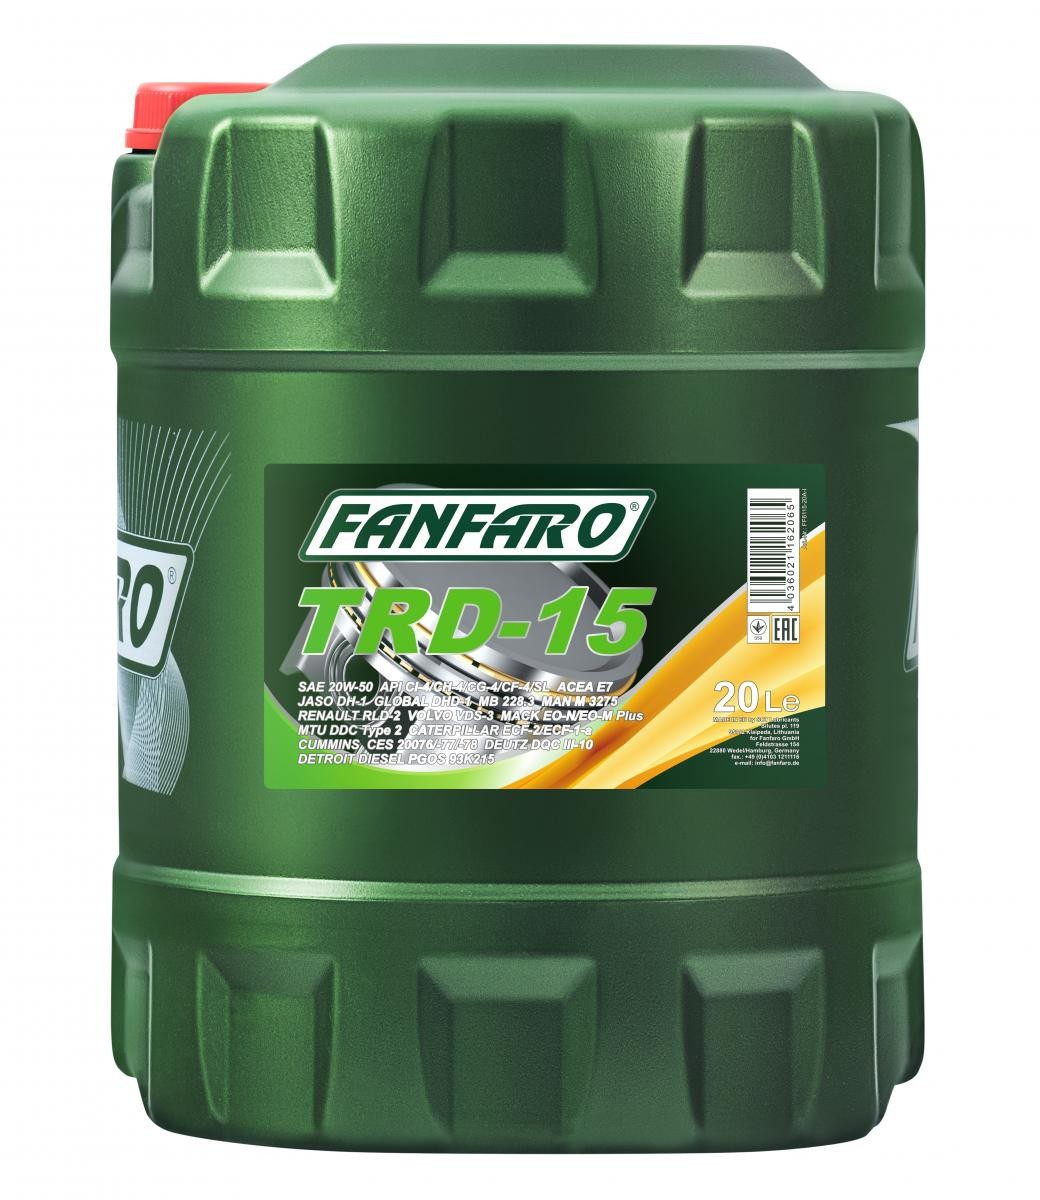 Car oil FANFARO 20W-50, 20l, Mineral Oil longlife FF6115-20